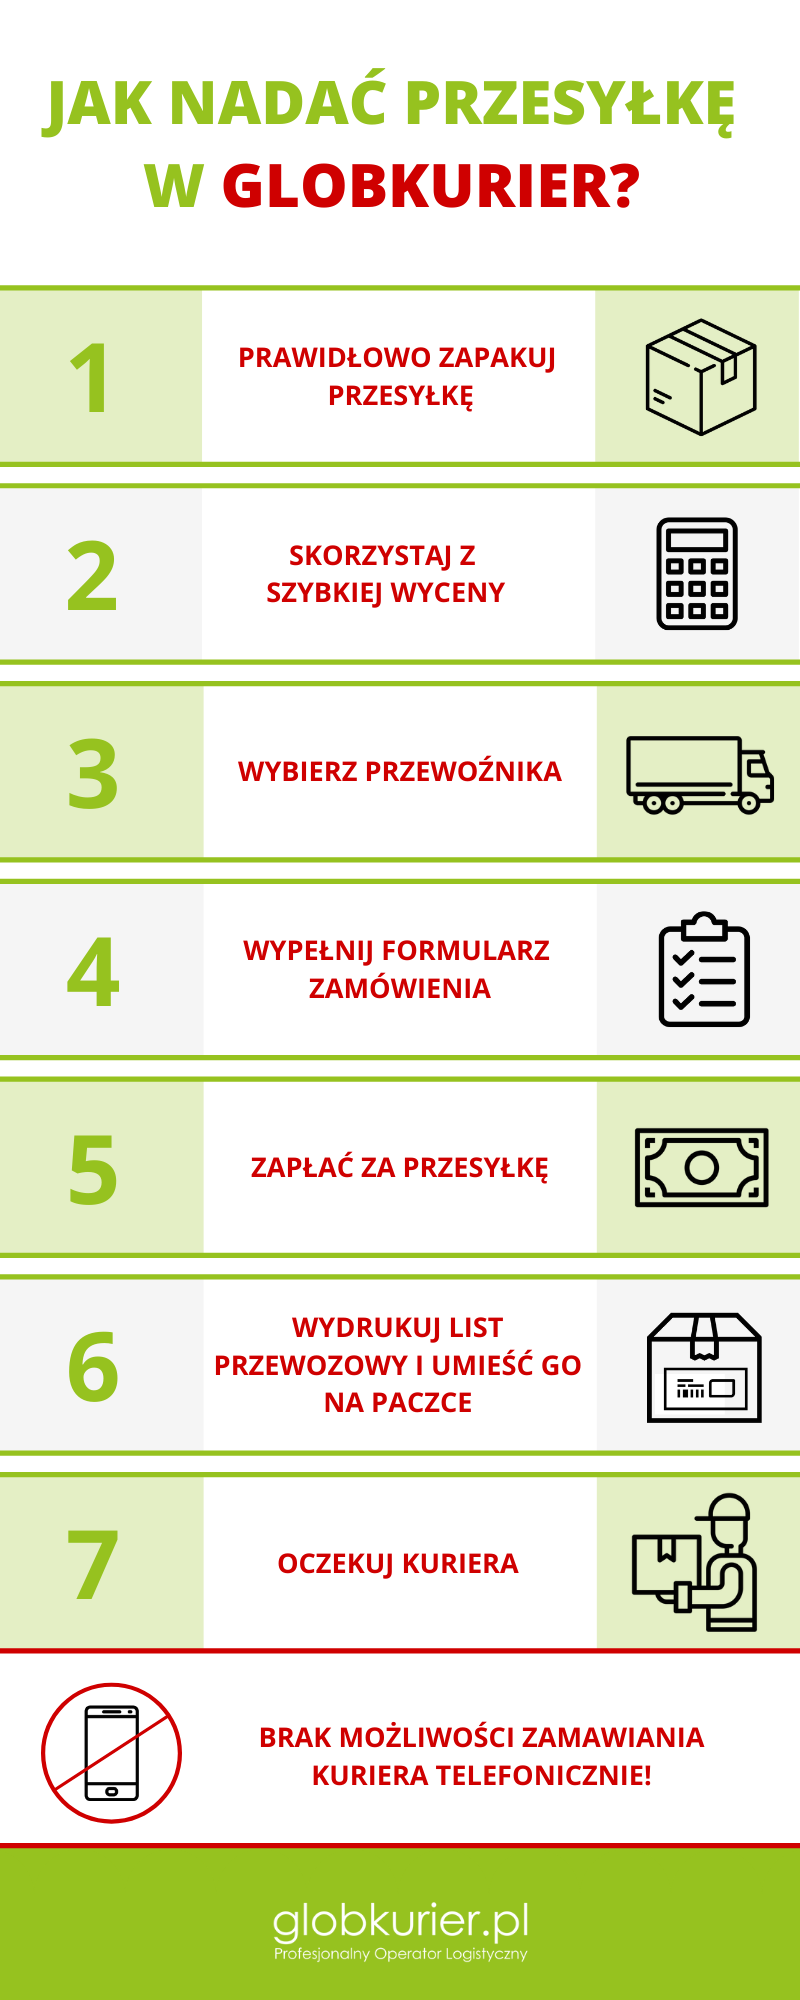 Jak nadać przesyłkę w GlobKurier.pl? Jak zamówić przesyłkę w GlobKurier.pl?